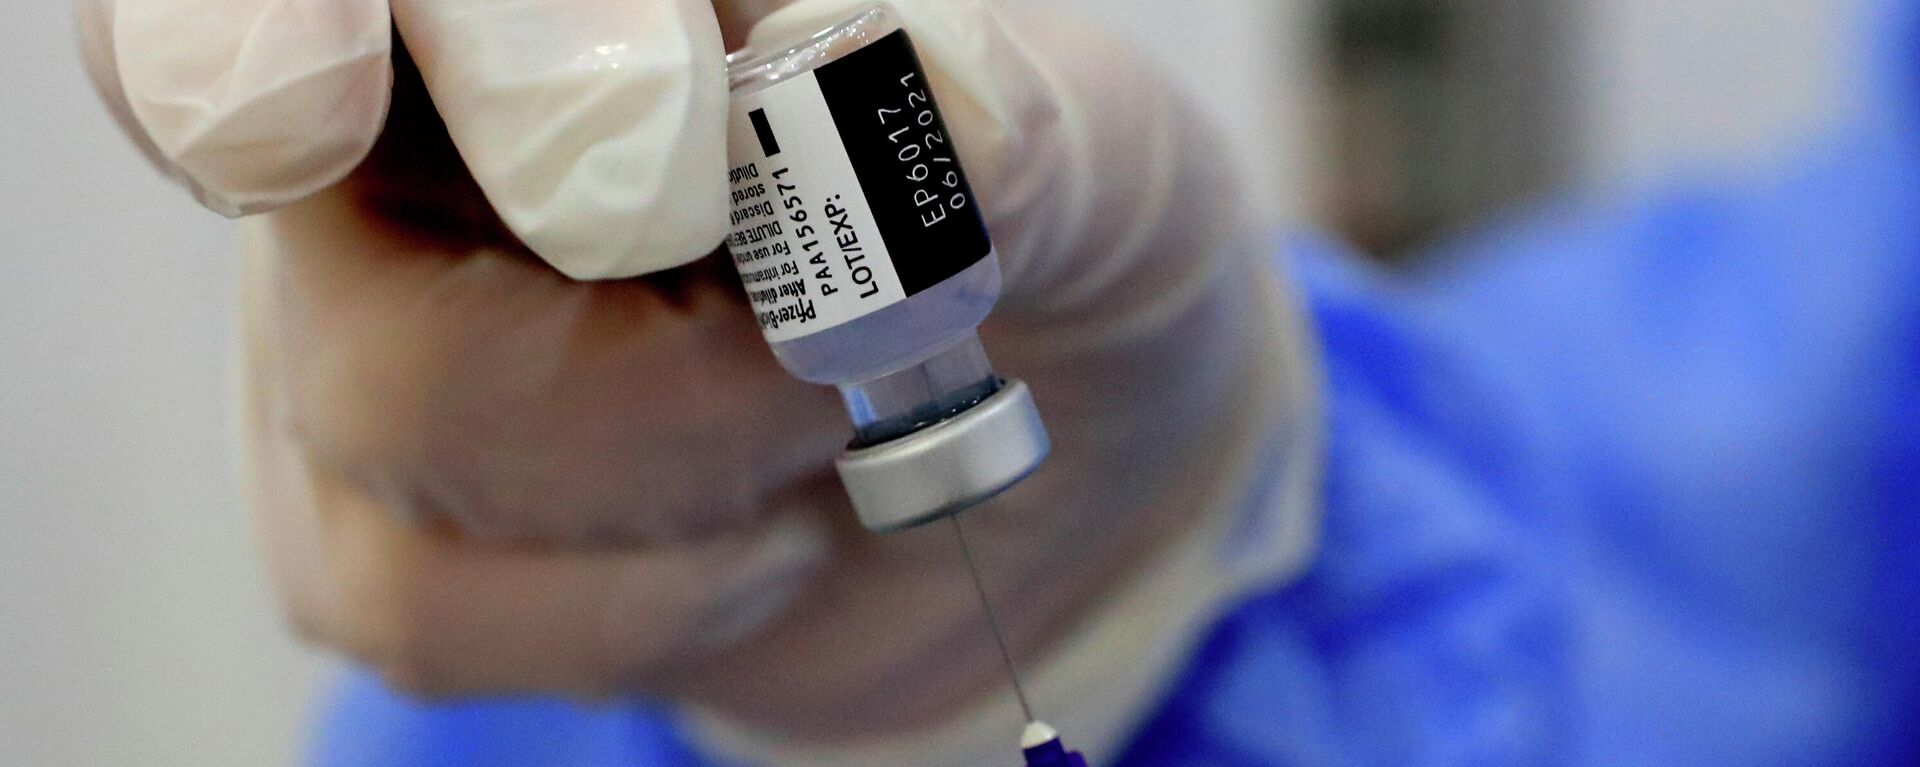 Una enfermera prepara una jeringa de la vacuna contra el coronavirus de Pfizer-BioNTech COVID-19 durante una campaña de vacunación en Beirut, Líbano, 16 de febrero de 2021. - Sputnik Mundo, 1920, 02.06.2021